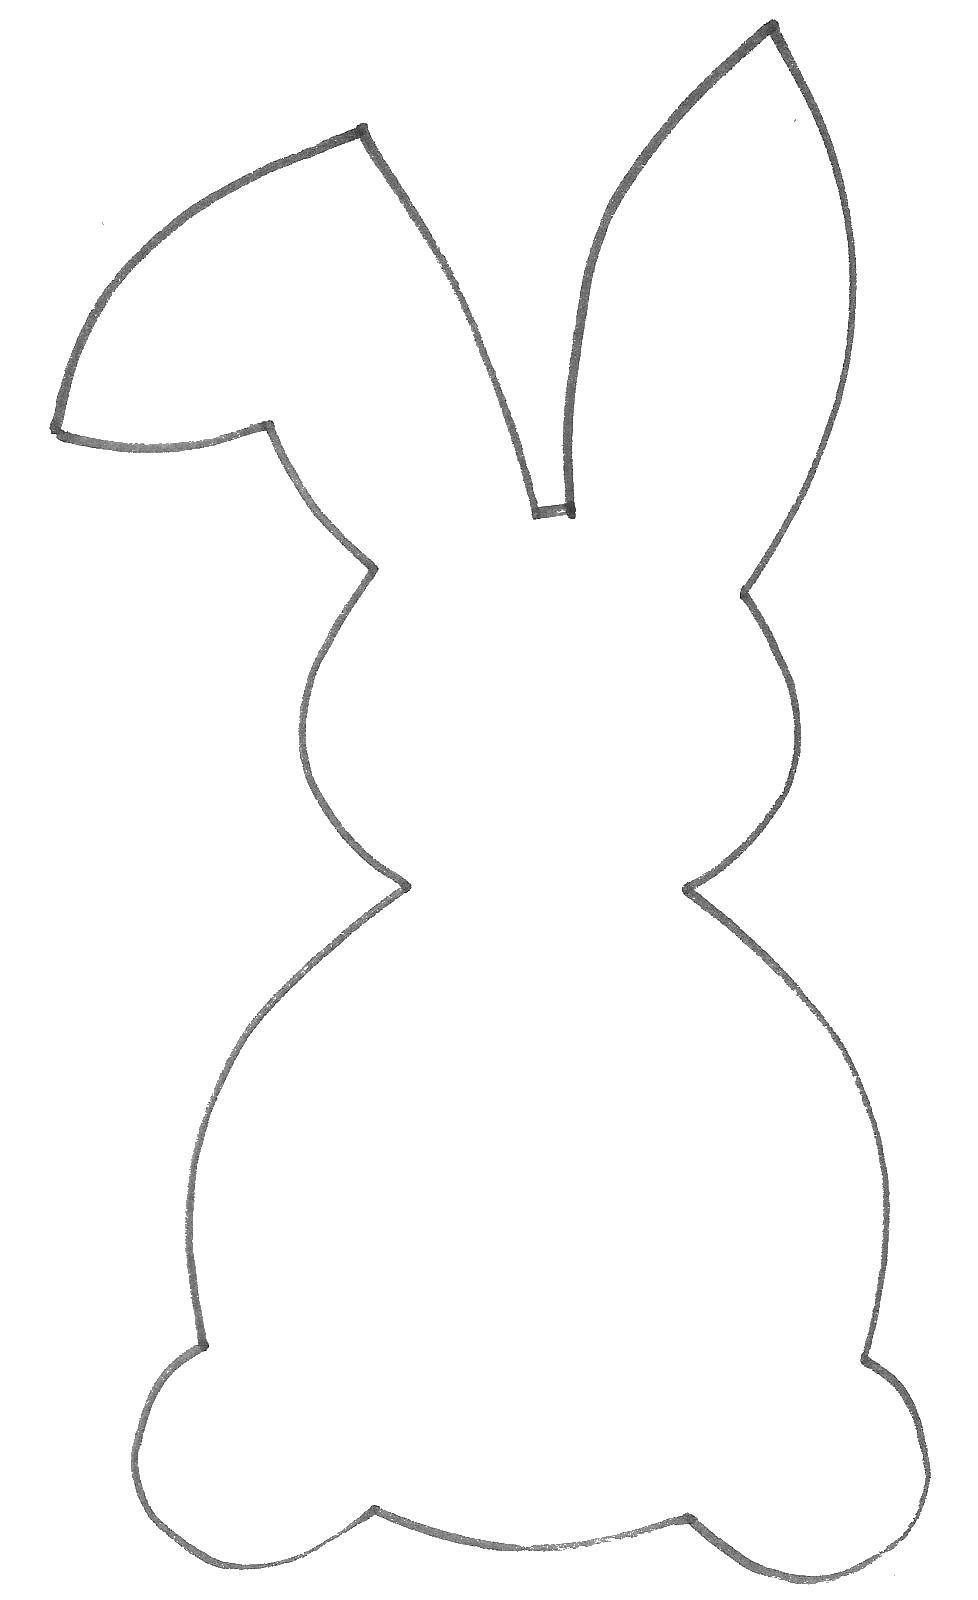 Контур зайца для вырезания контур, включая уши (контур, уши)